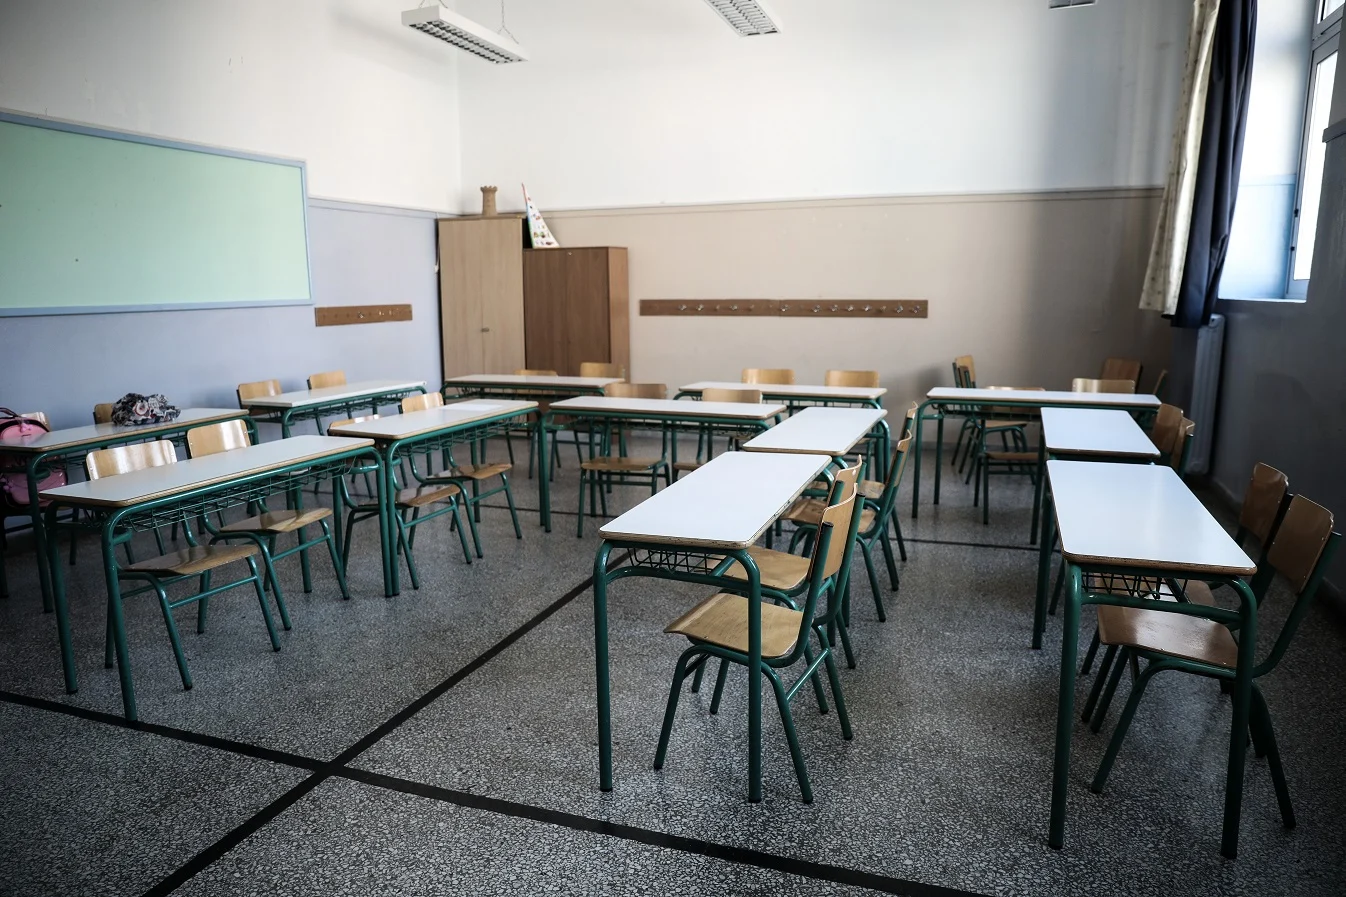 Σχολεία: Με μαθητικό «φάκελο καθυστερήσεων» ξεκινά η νέα χρονιά – Αλλάζουν όλα με τις απουσίες